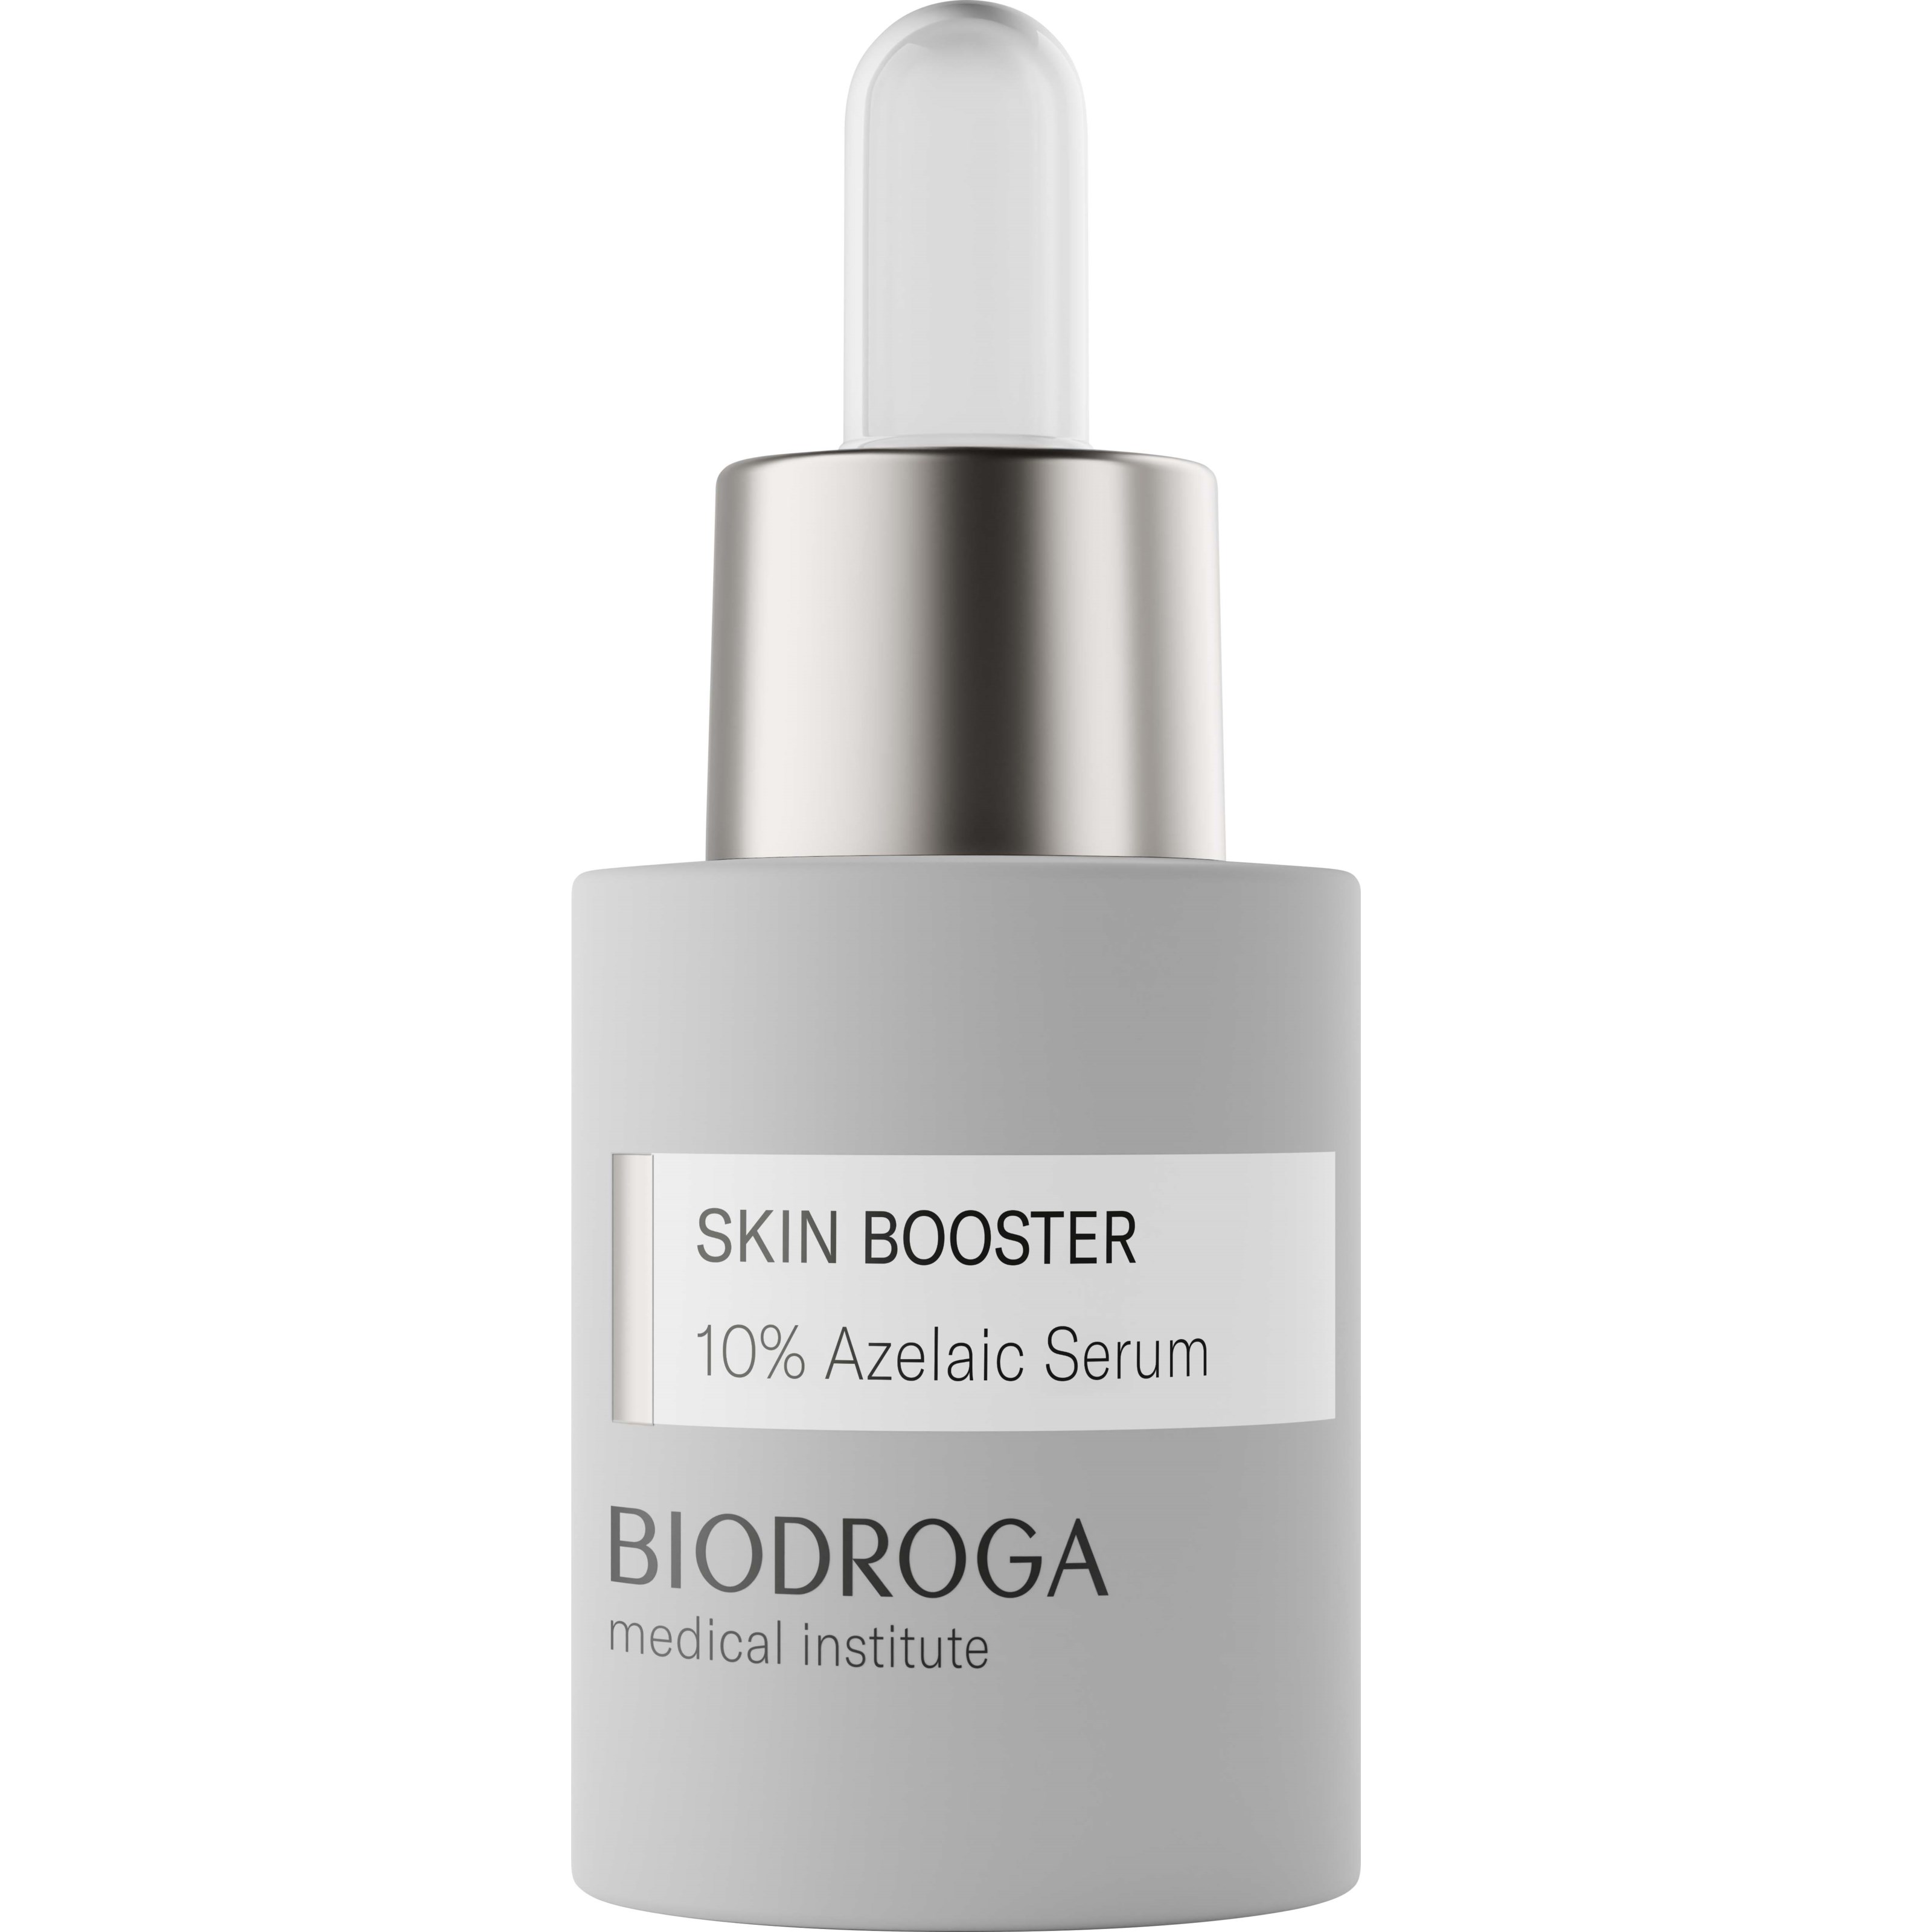 Biodroga Medical Institute Skin Booster 10% Azelaic Serum 15 ml